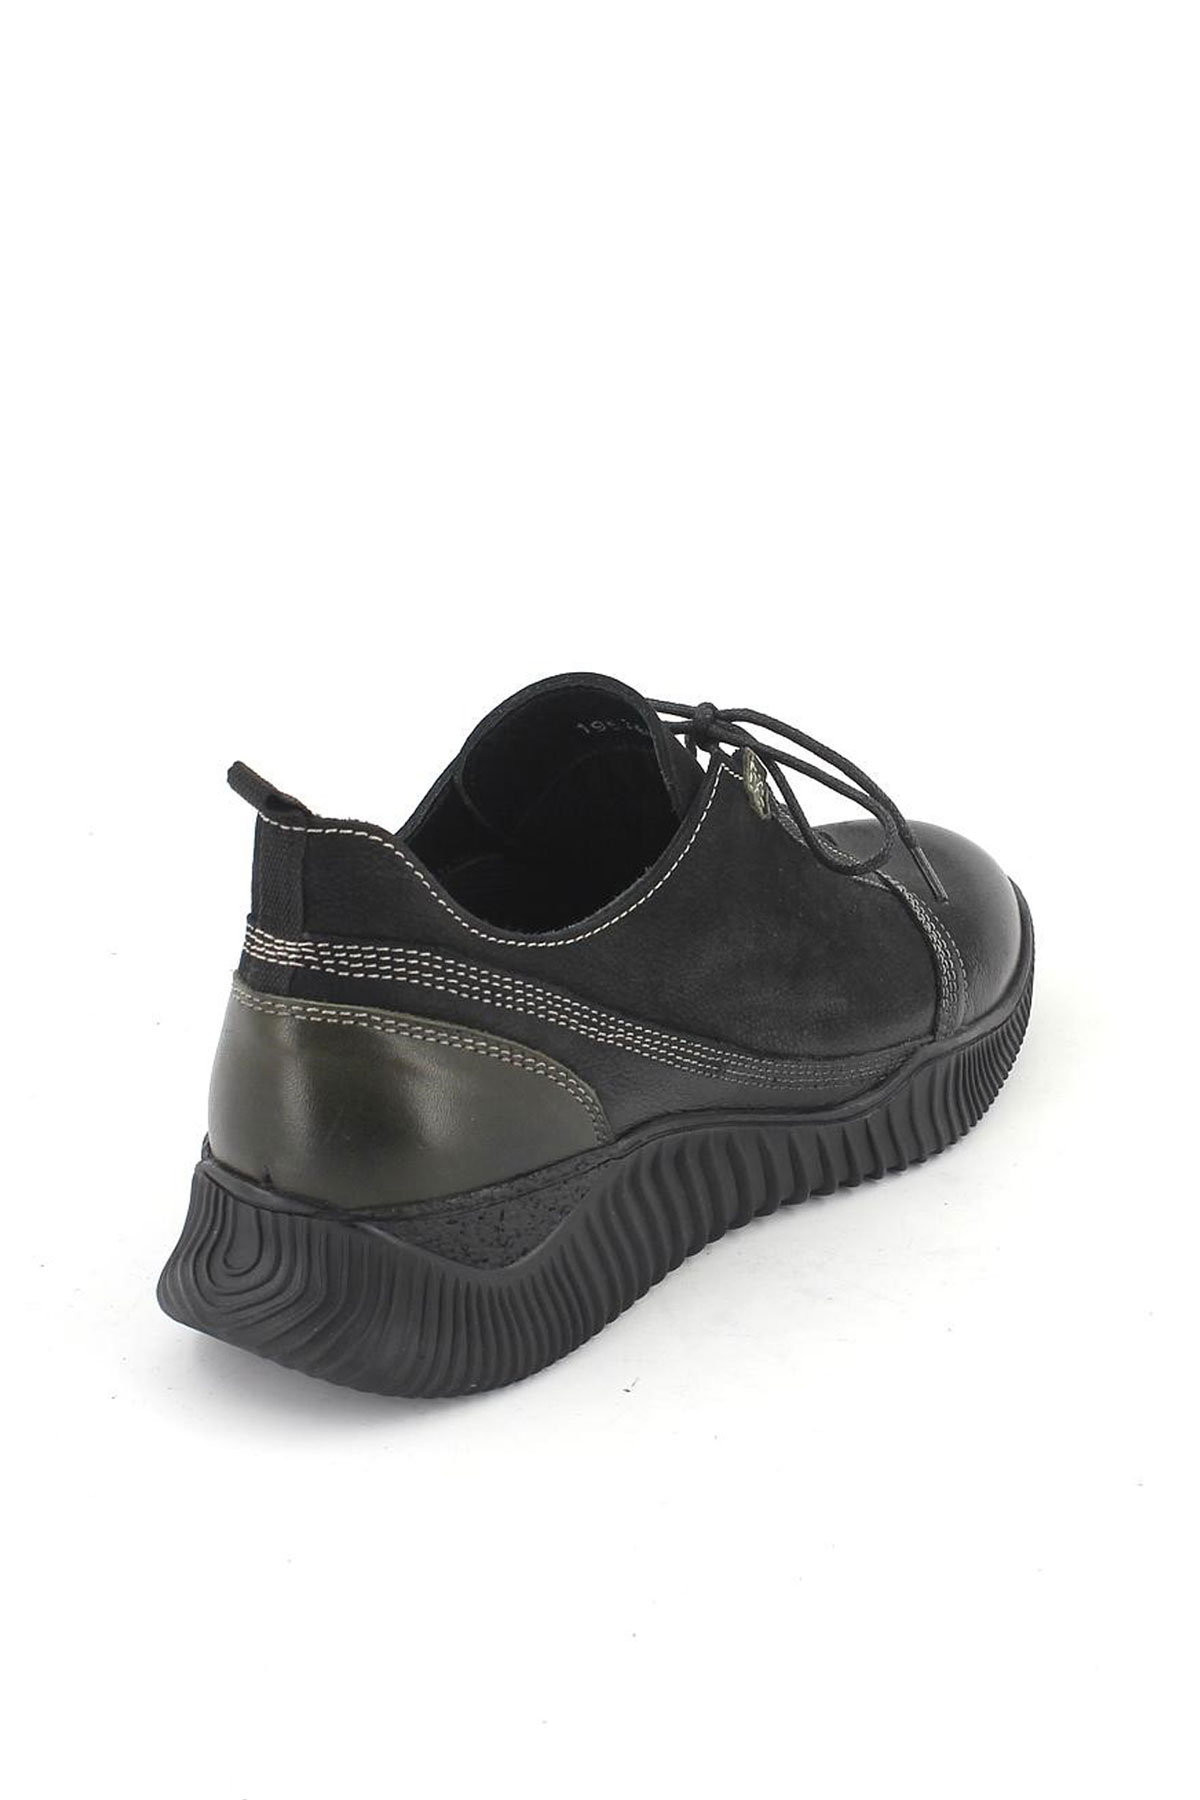 Kadın Comfort Deri Ayakkabı Siyah Yeşil 1953859K - Thumbnail